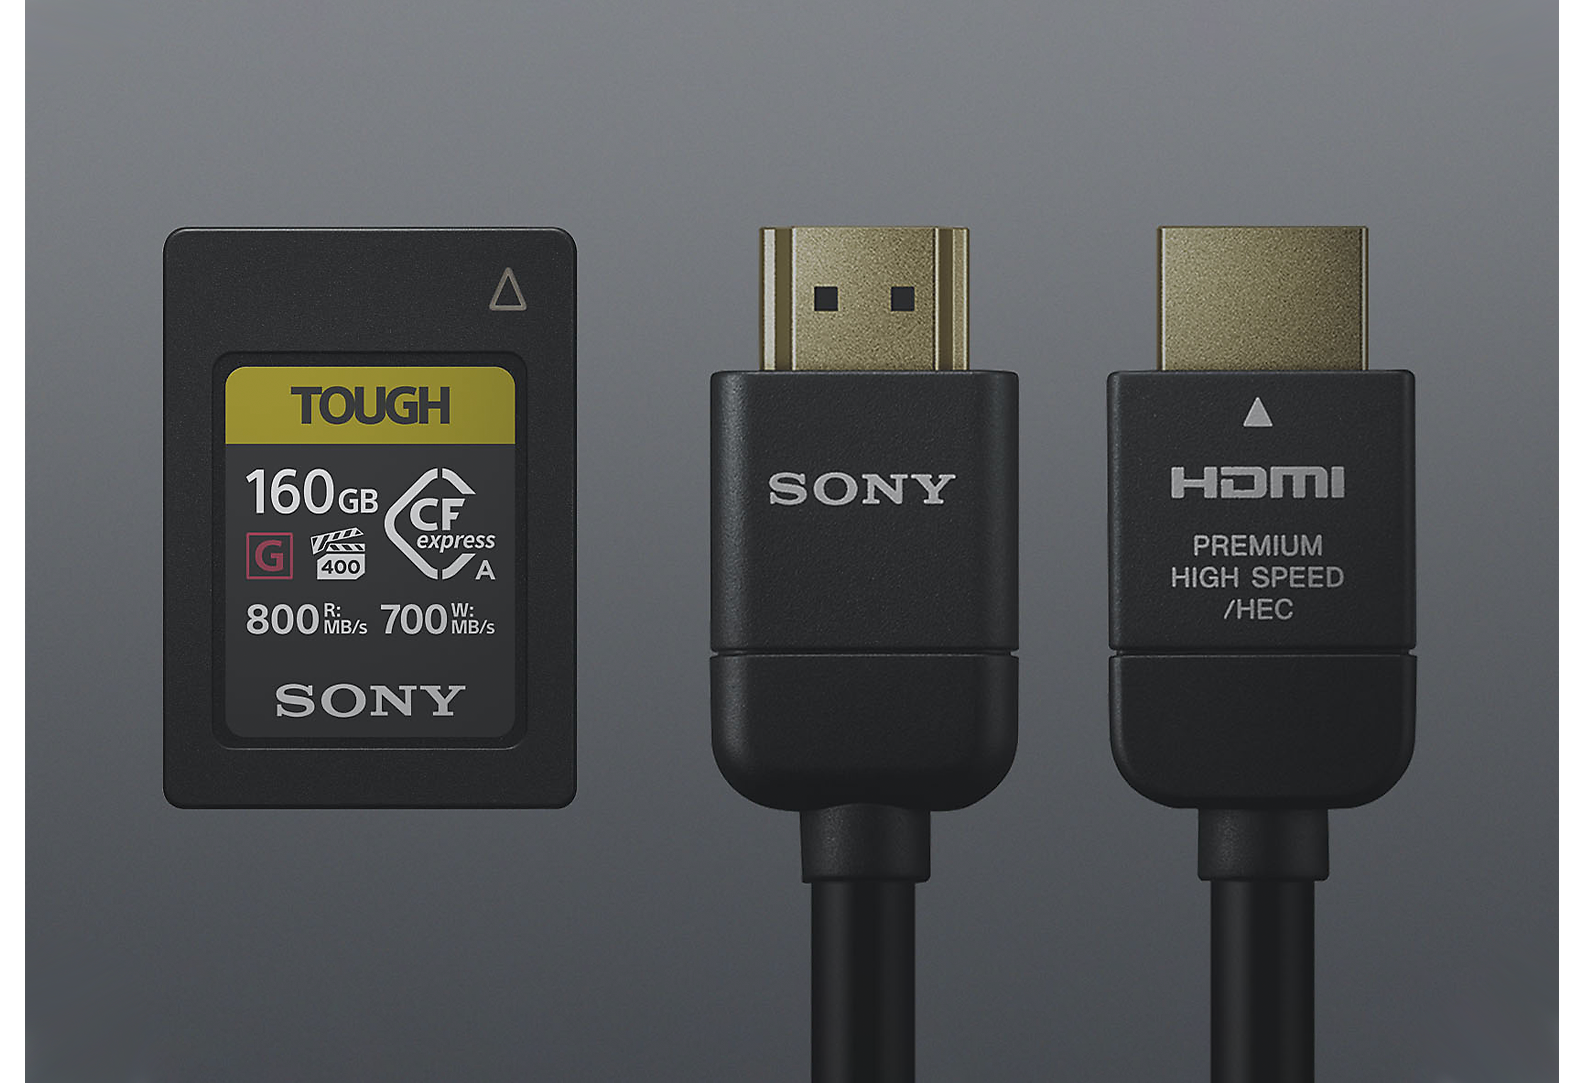 Ett Tough-SD-kort från Sony och två svarta kablar från Sony mot grå bakgrund